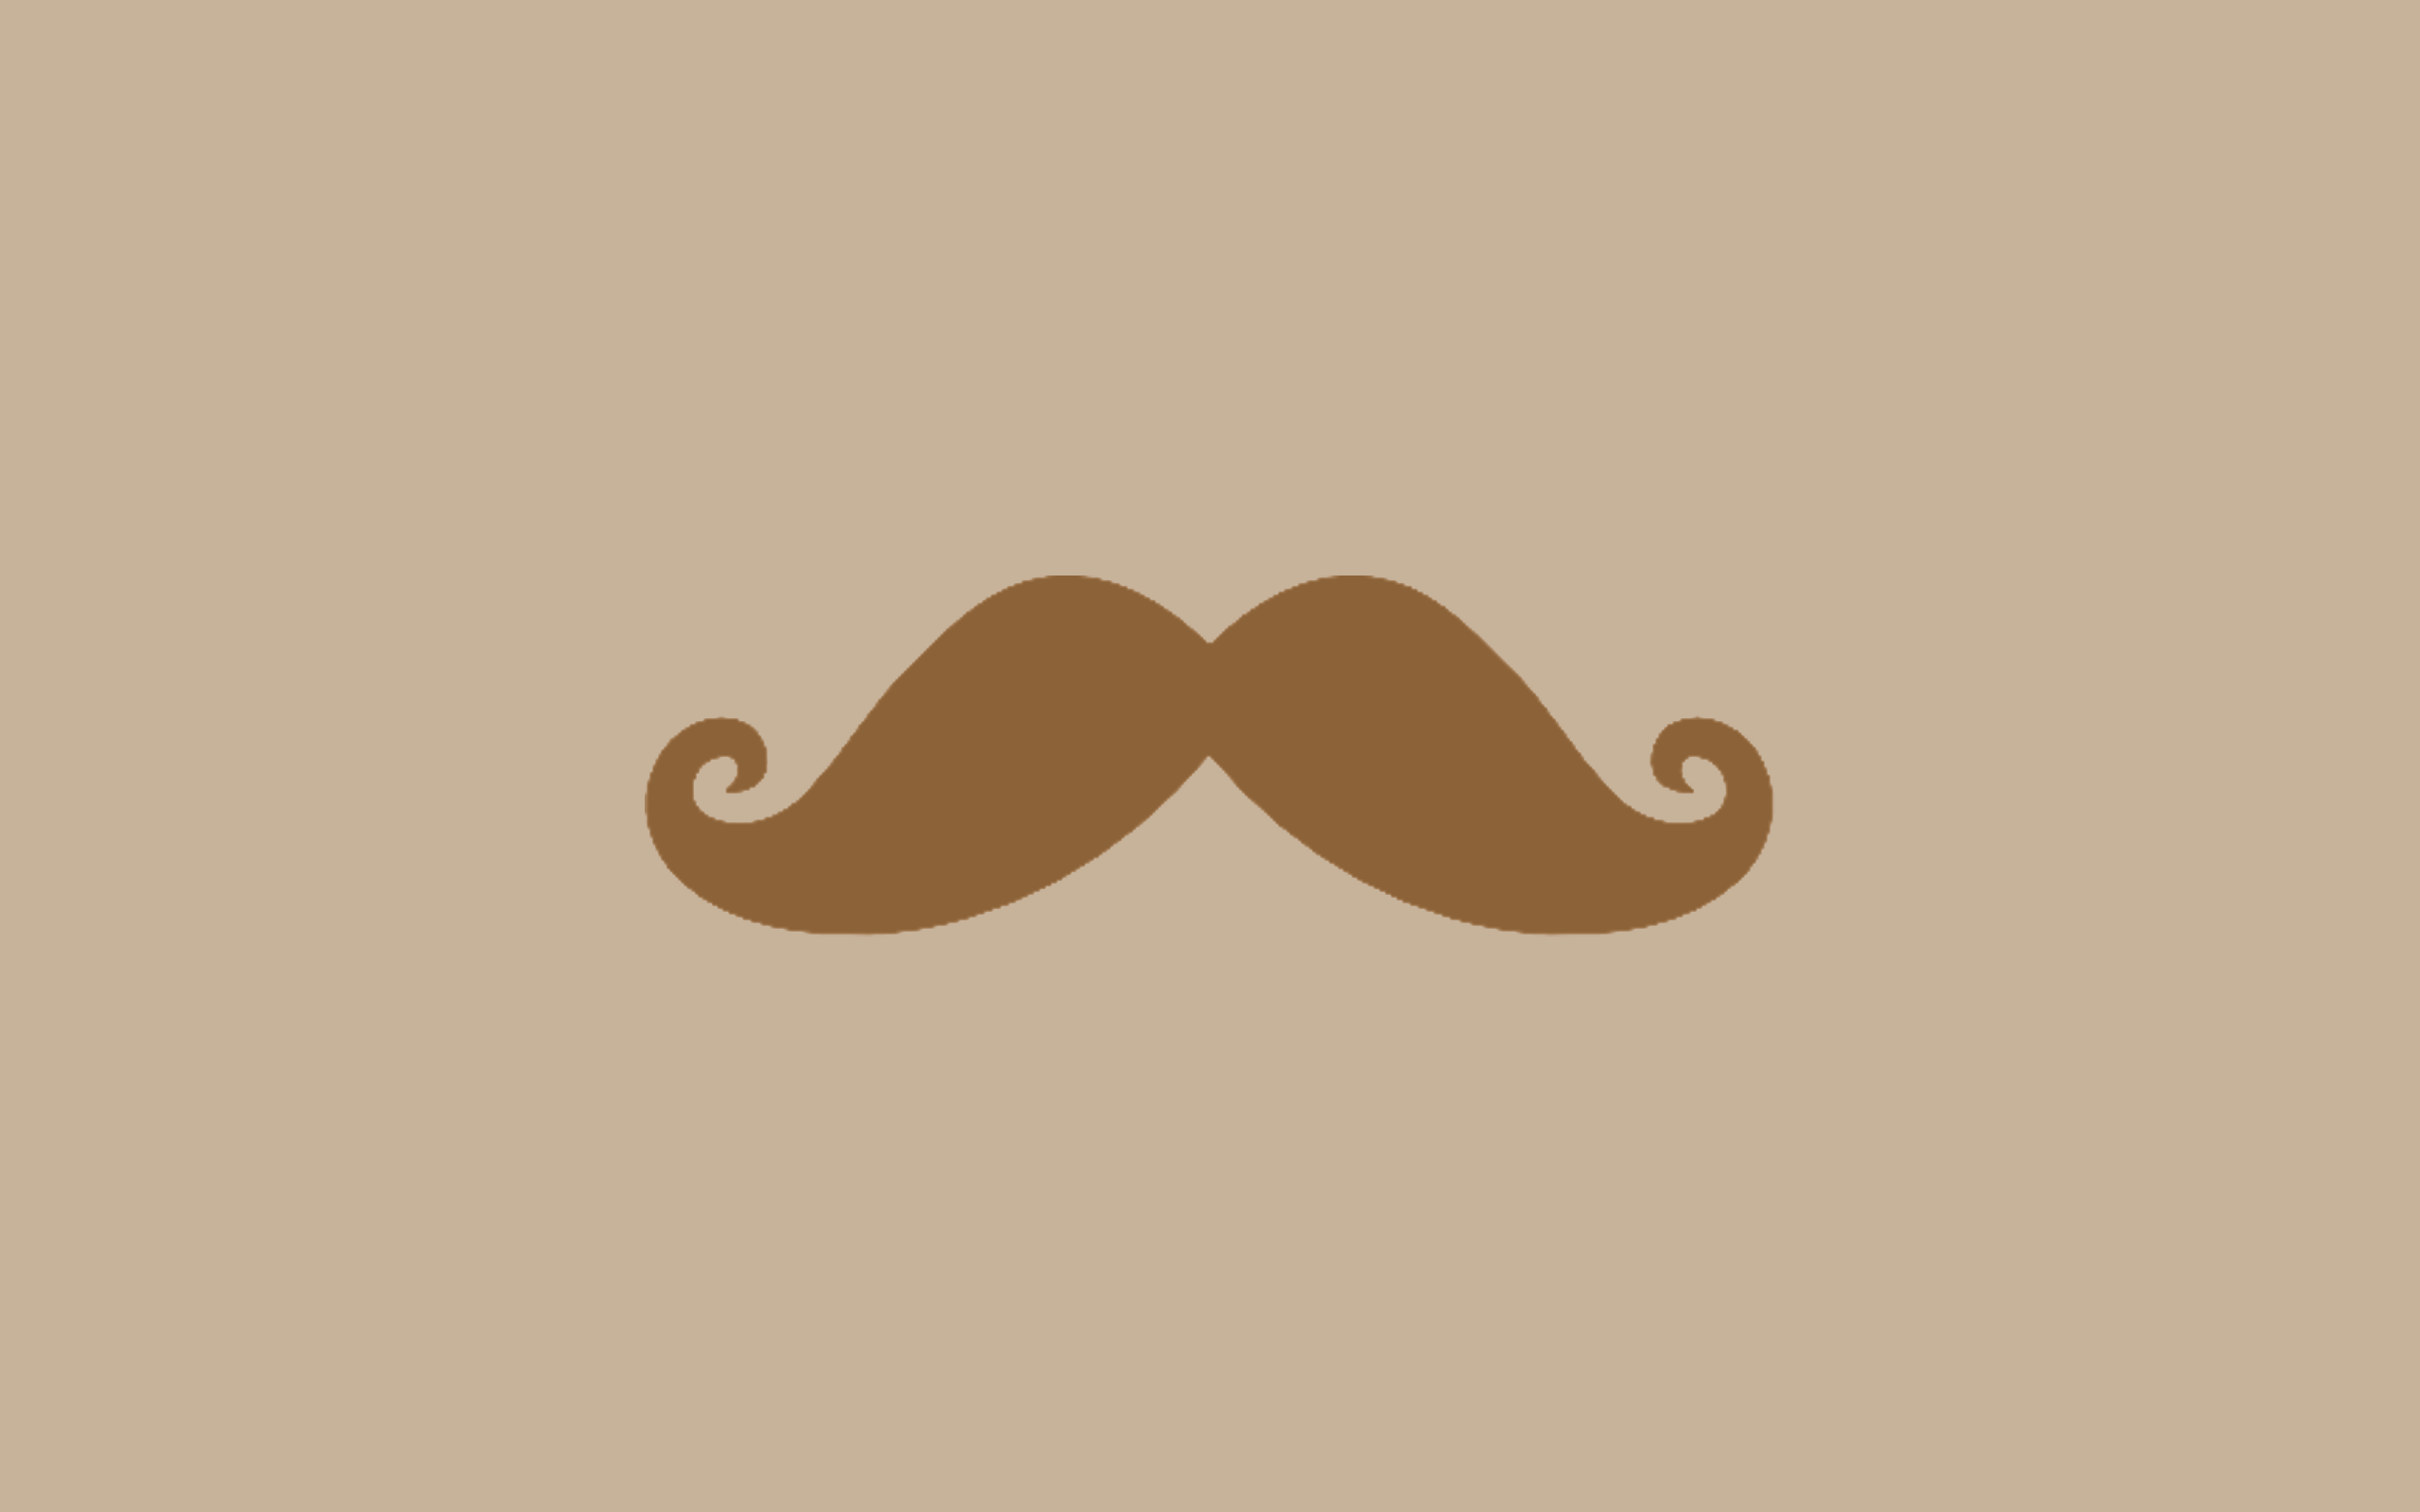 Free download Moustache Wallpaper [2560x1600] for your Desktop, Mobile & Tablet. Explore Mustache Desktop Background. Galaxy Mustache Wallpaper, Mustache Wallpaper for Desktop